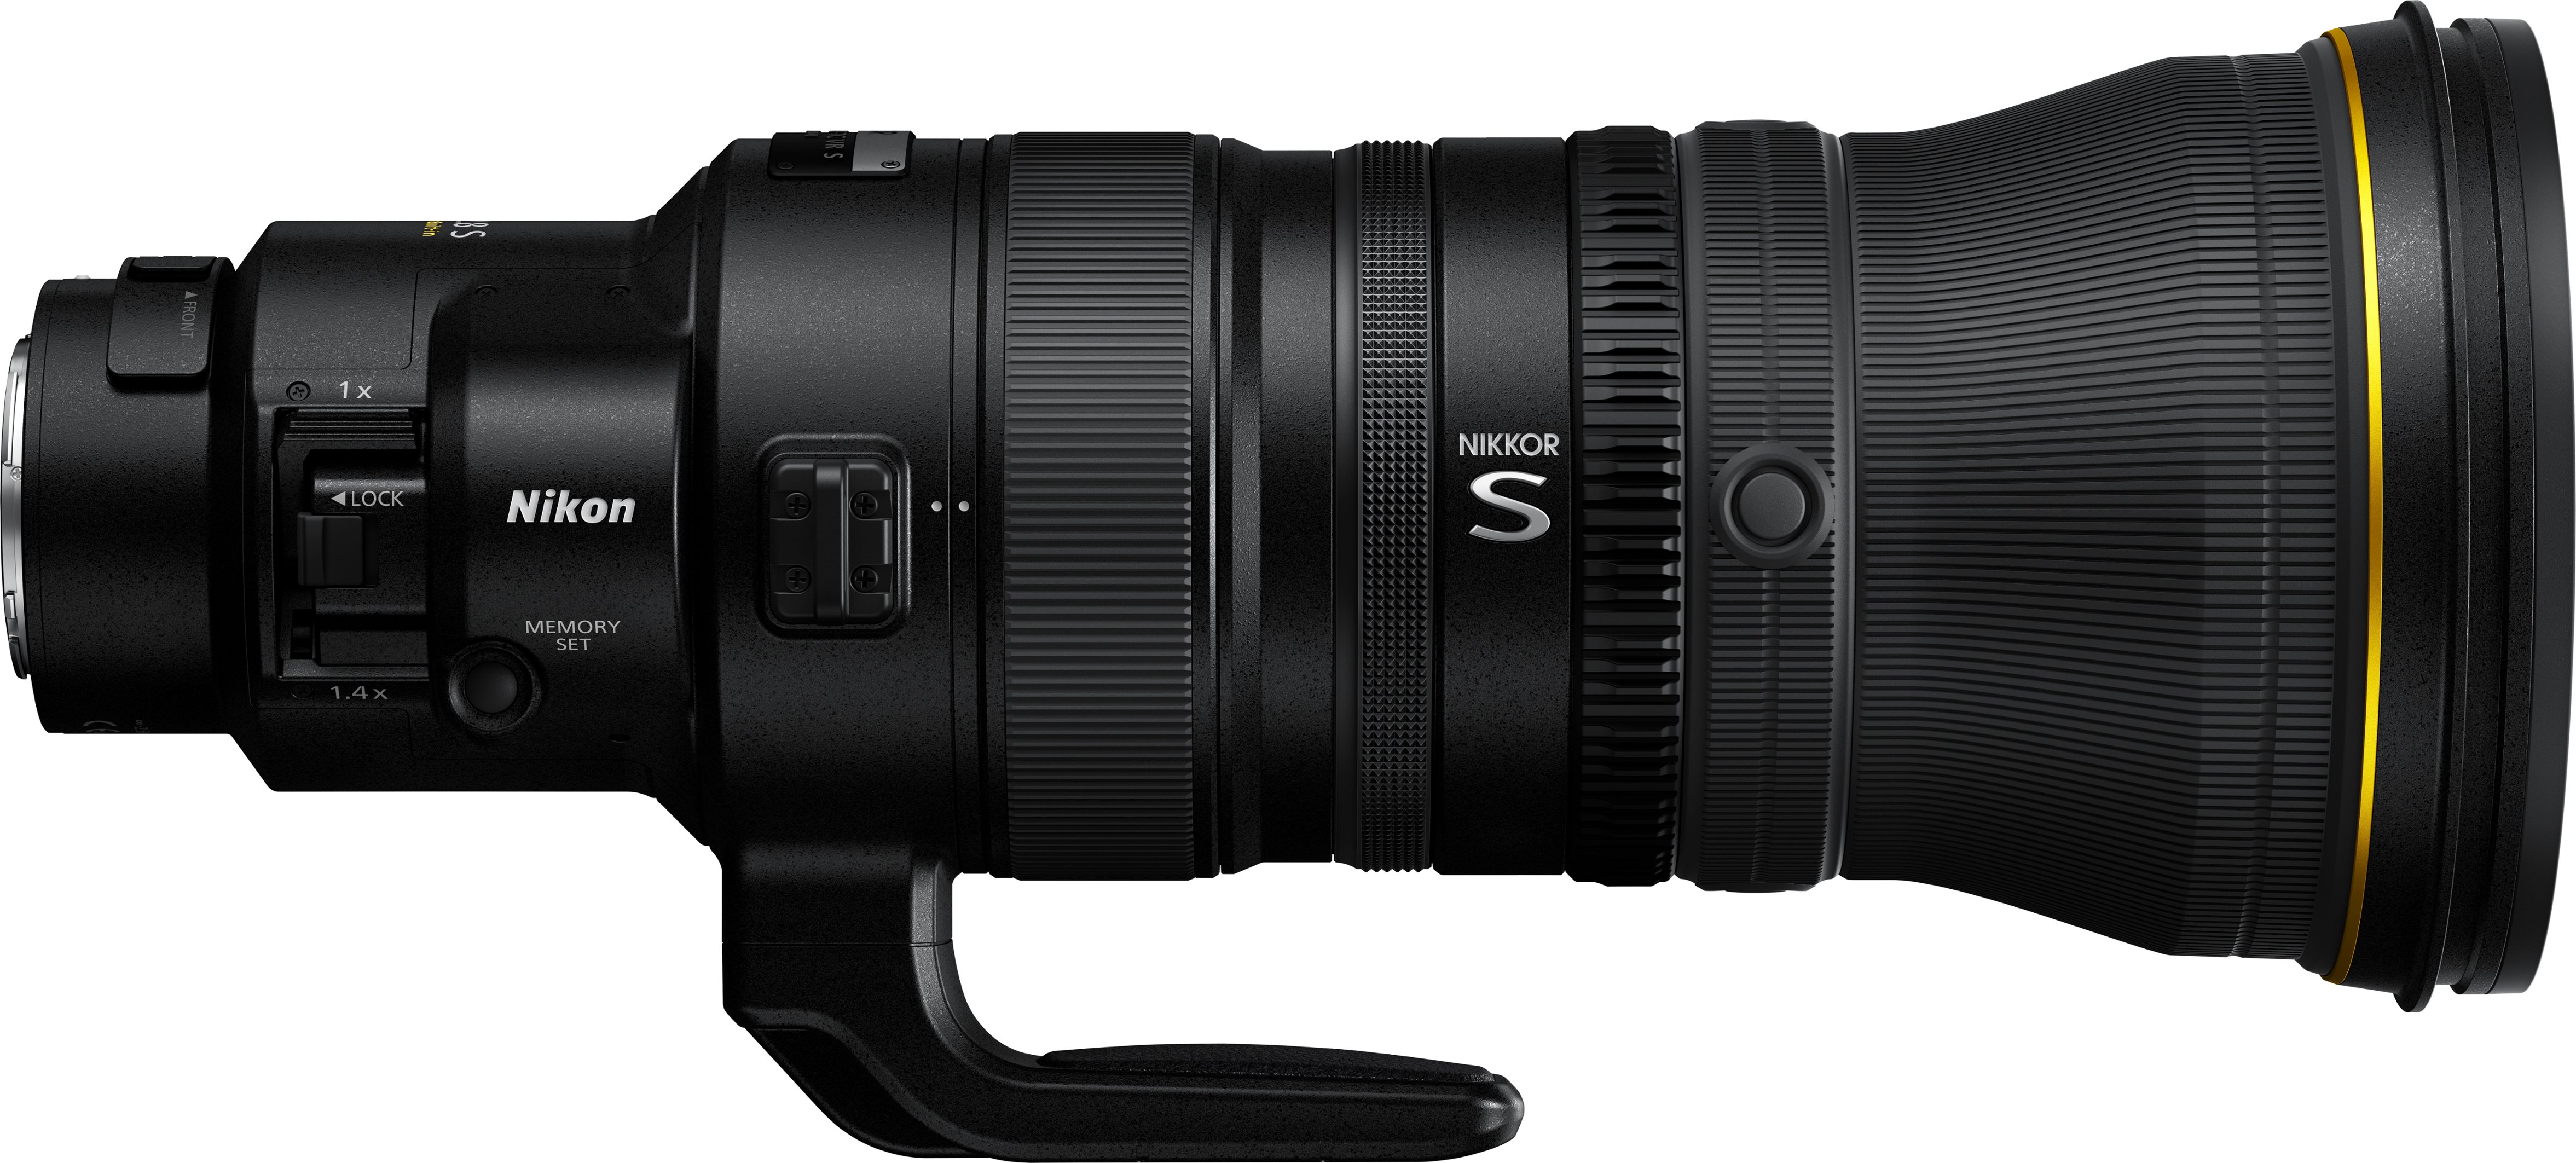 NIKKOR Z 400mm f/2.8 TC VR S Super-Telephoto Prime Lens for Nikon Z-Series  Mirrorless Cameras Black 20111 - Best Buy